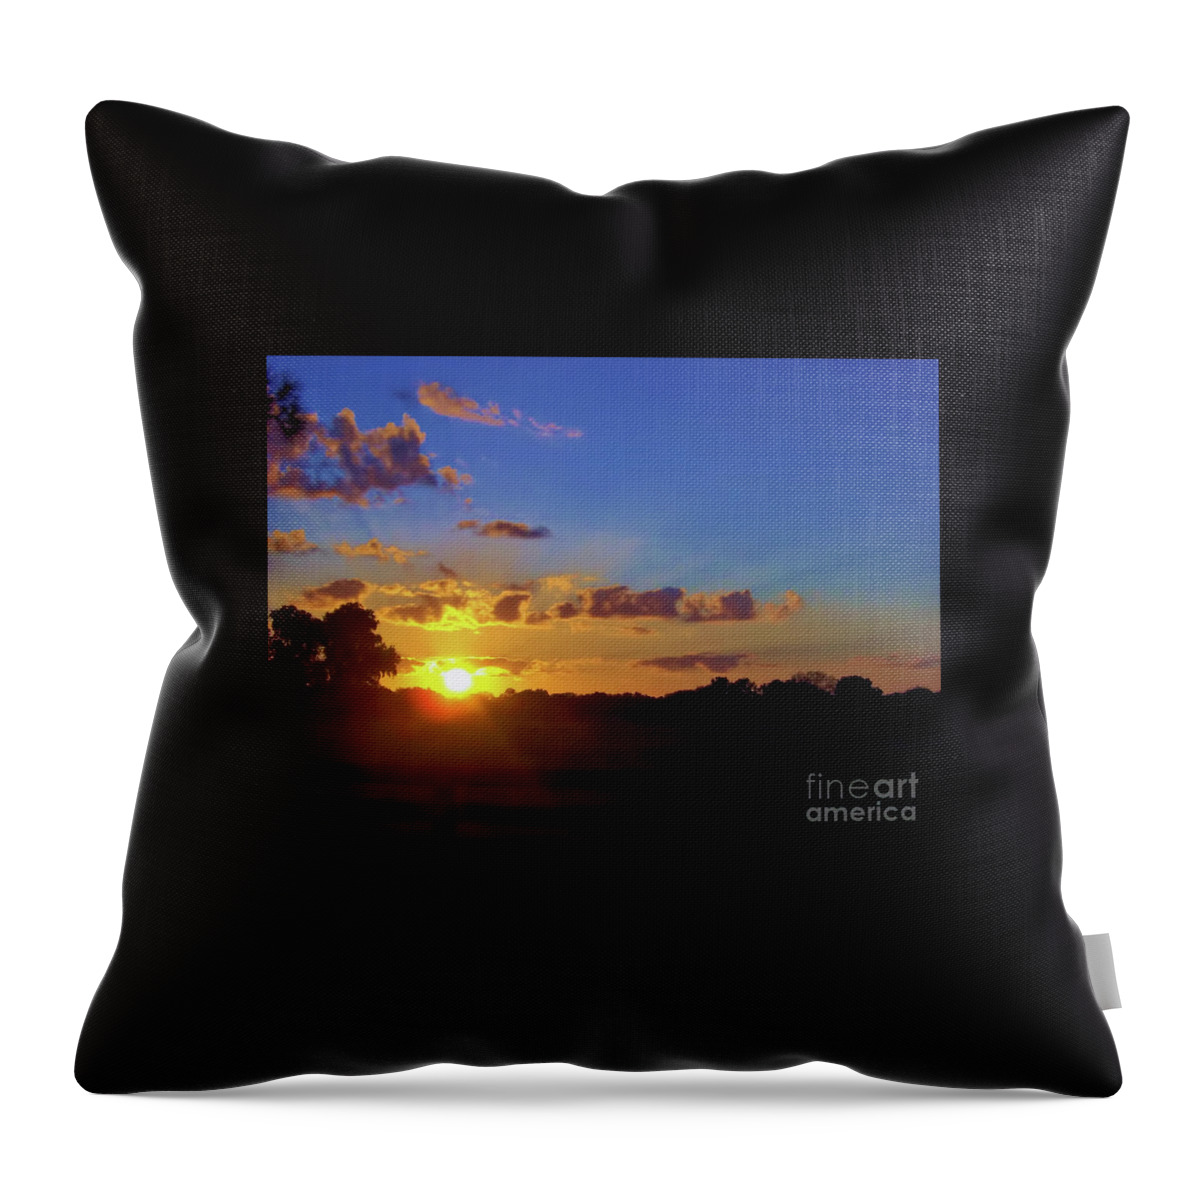 Sunset Throw Pillow featuring the photograph Rural Sun Set by D Hackett